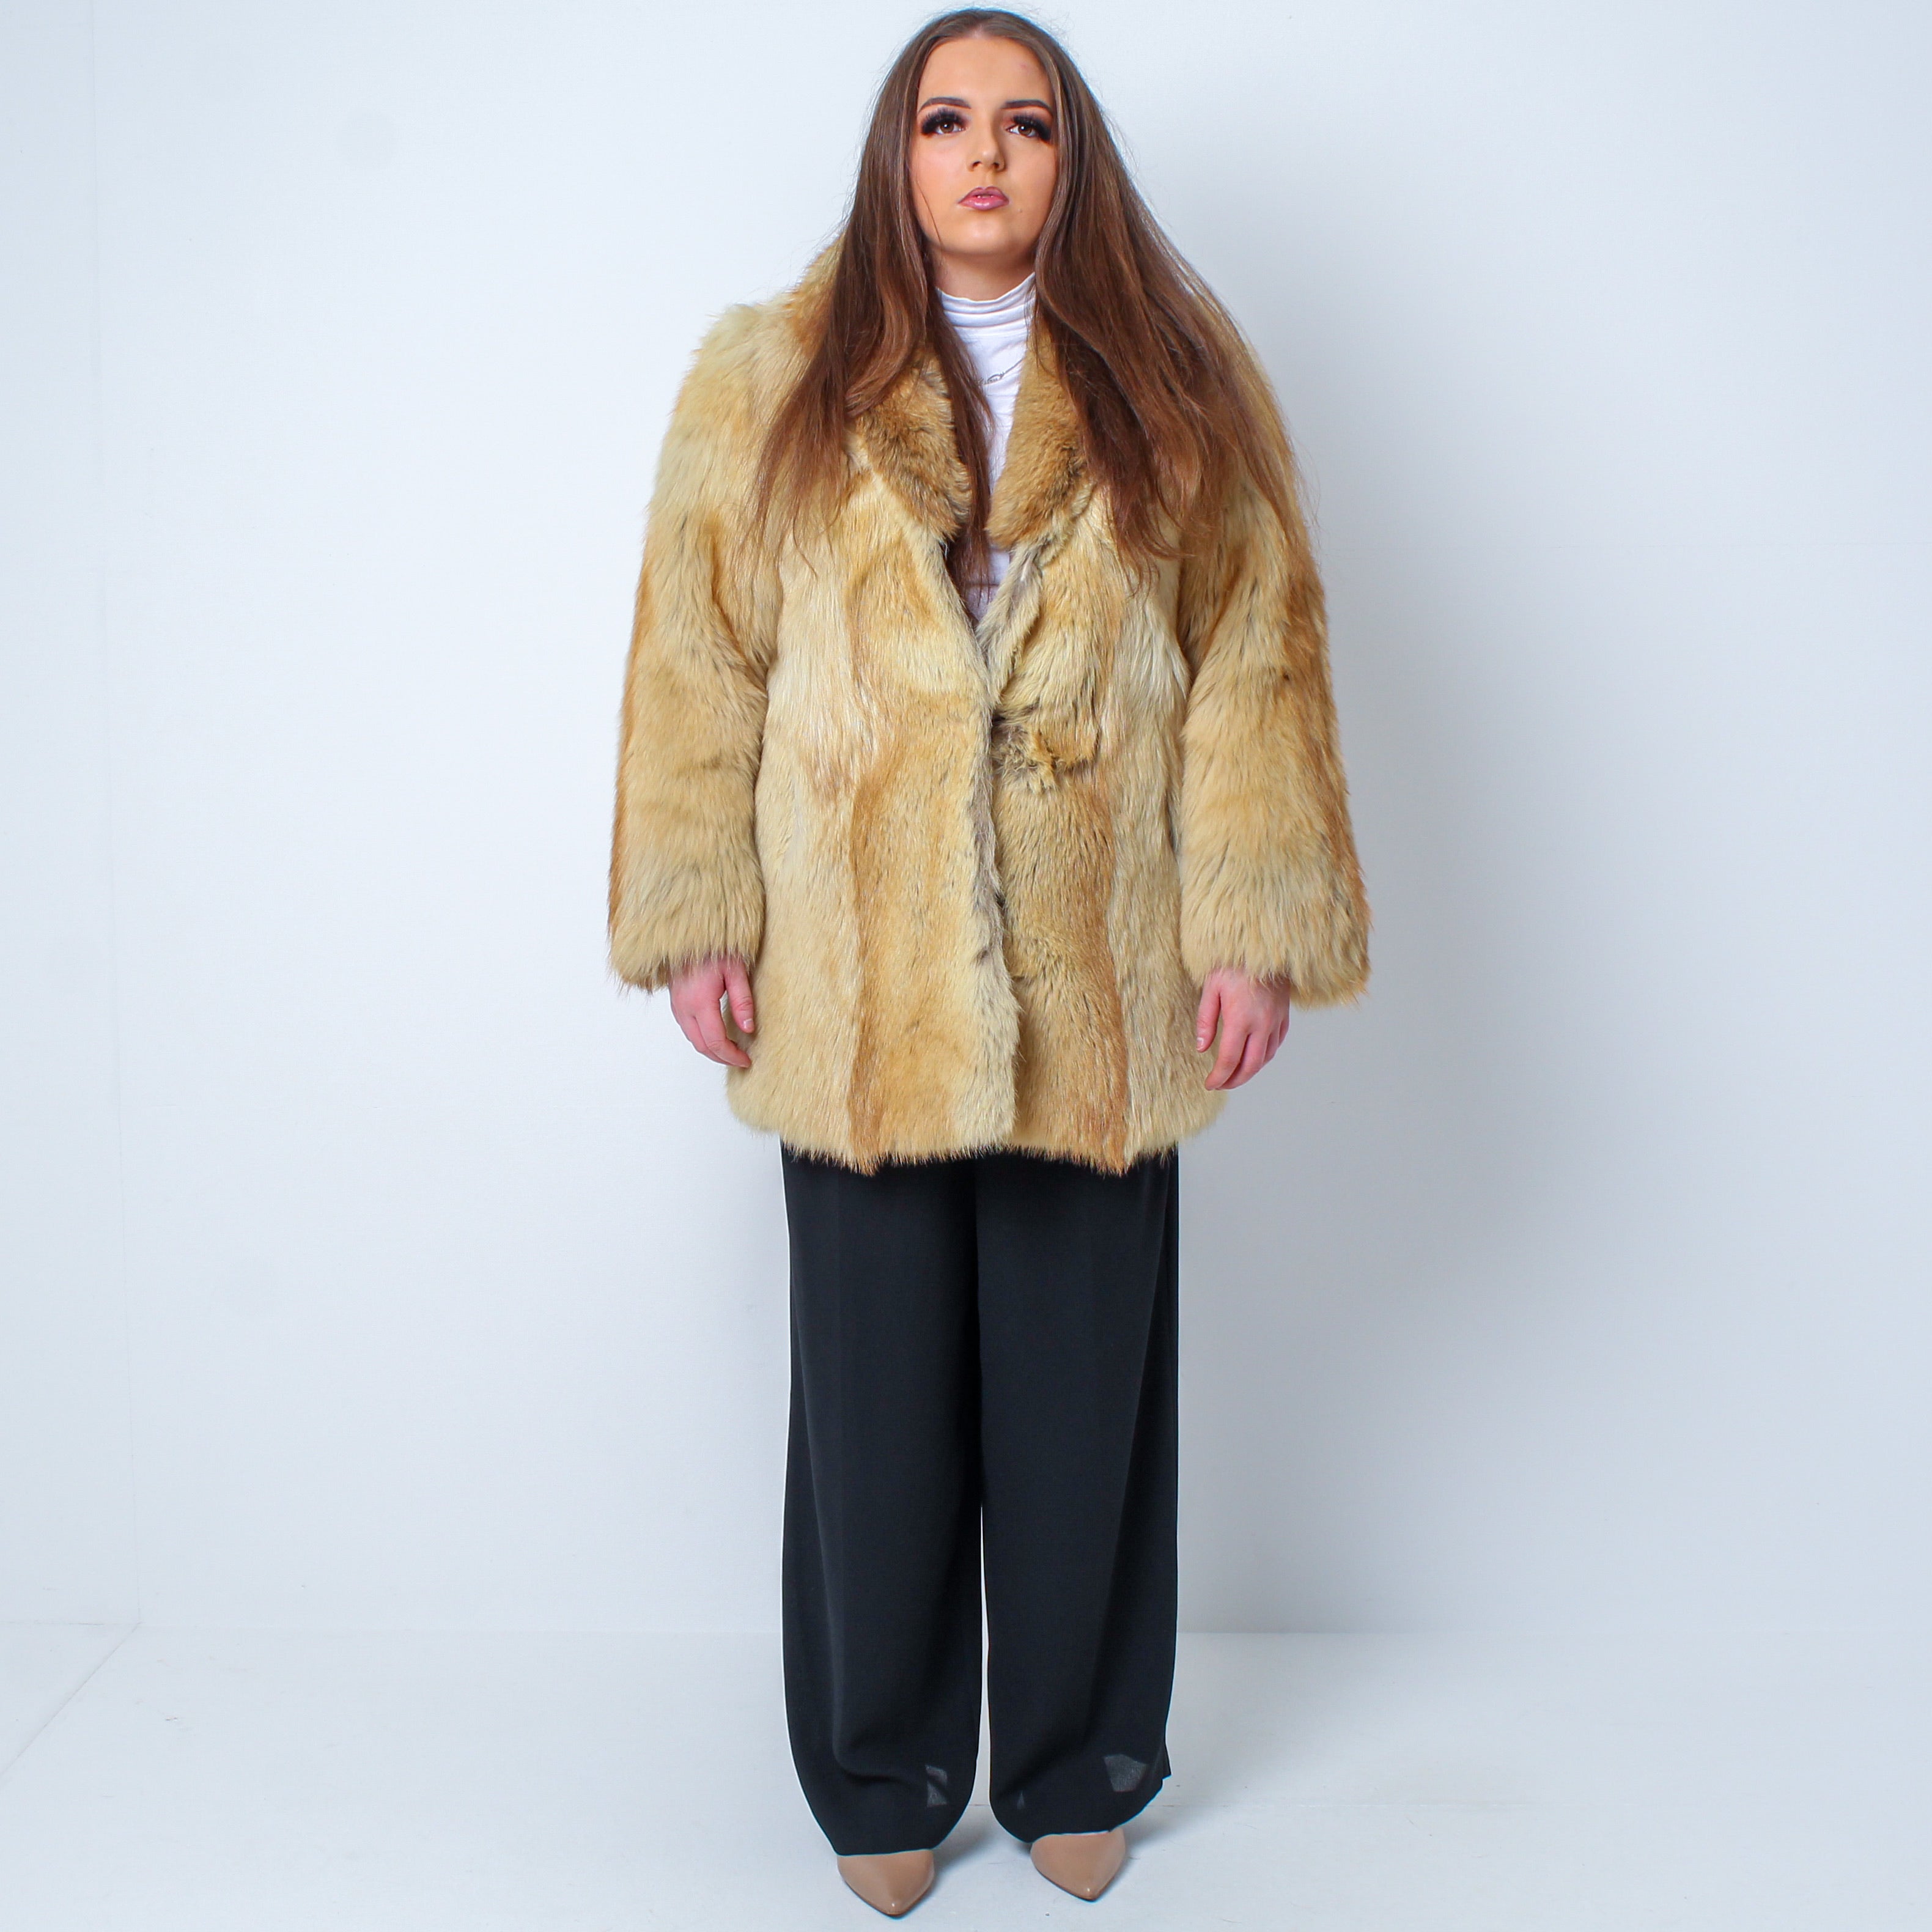 Vintage Luxury Real Golden Fox Fur Coat - UK 12-16